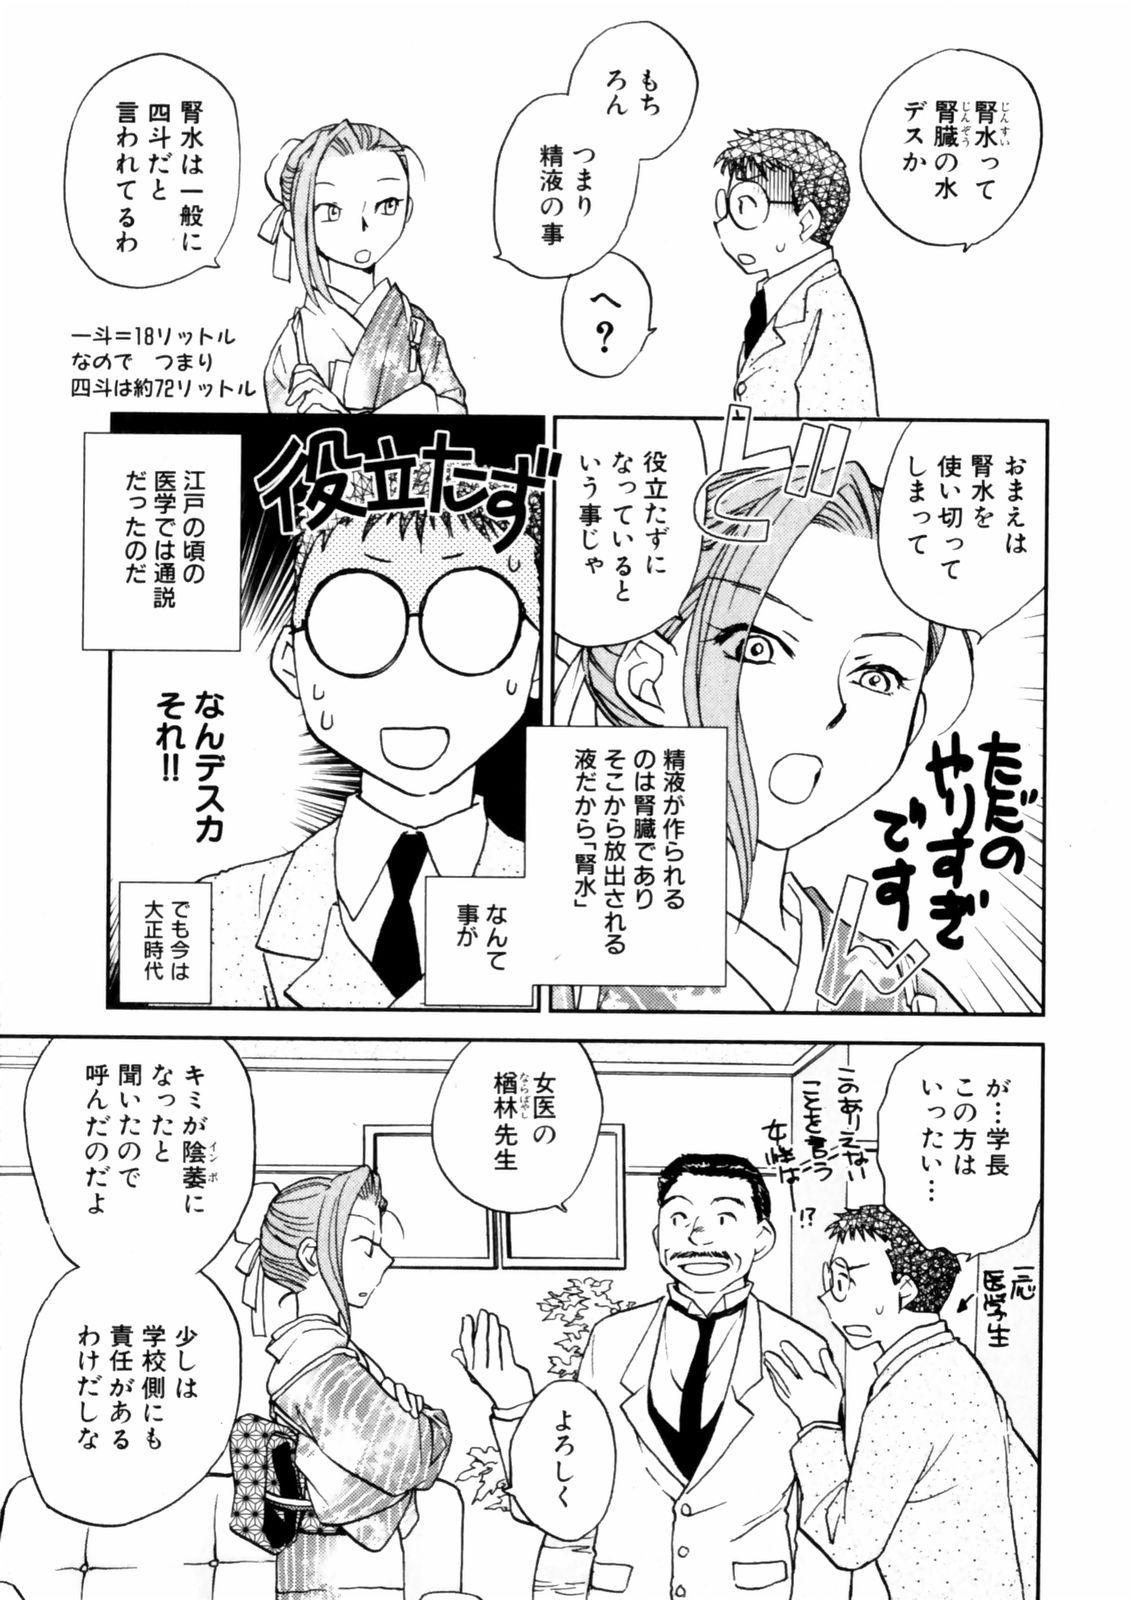 [Okano Ahiru] Hanasake ! Otome Juku (Otome Private Tutoring School) Vol.2 24